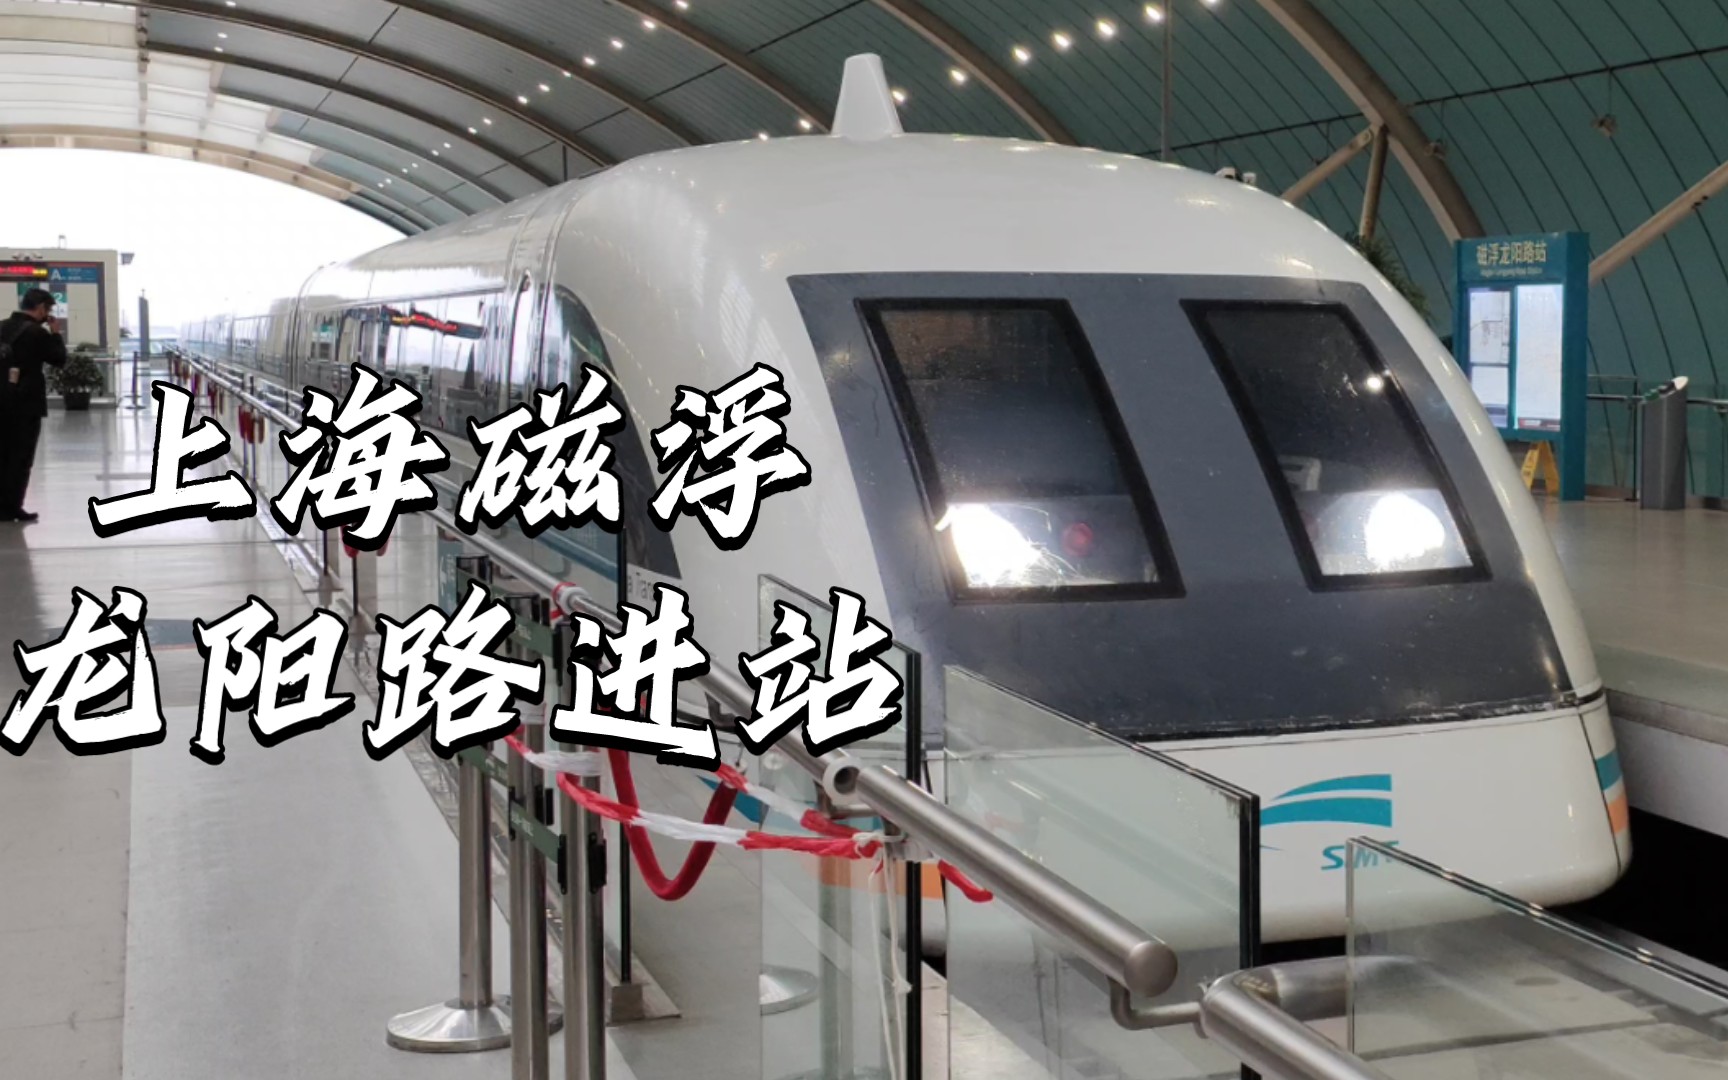 【轨道交通6】上海磁悬浮列车龙阳路进站